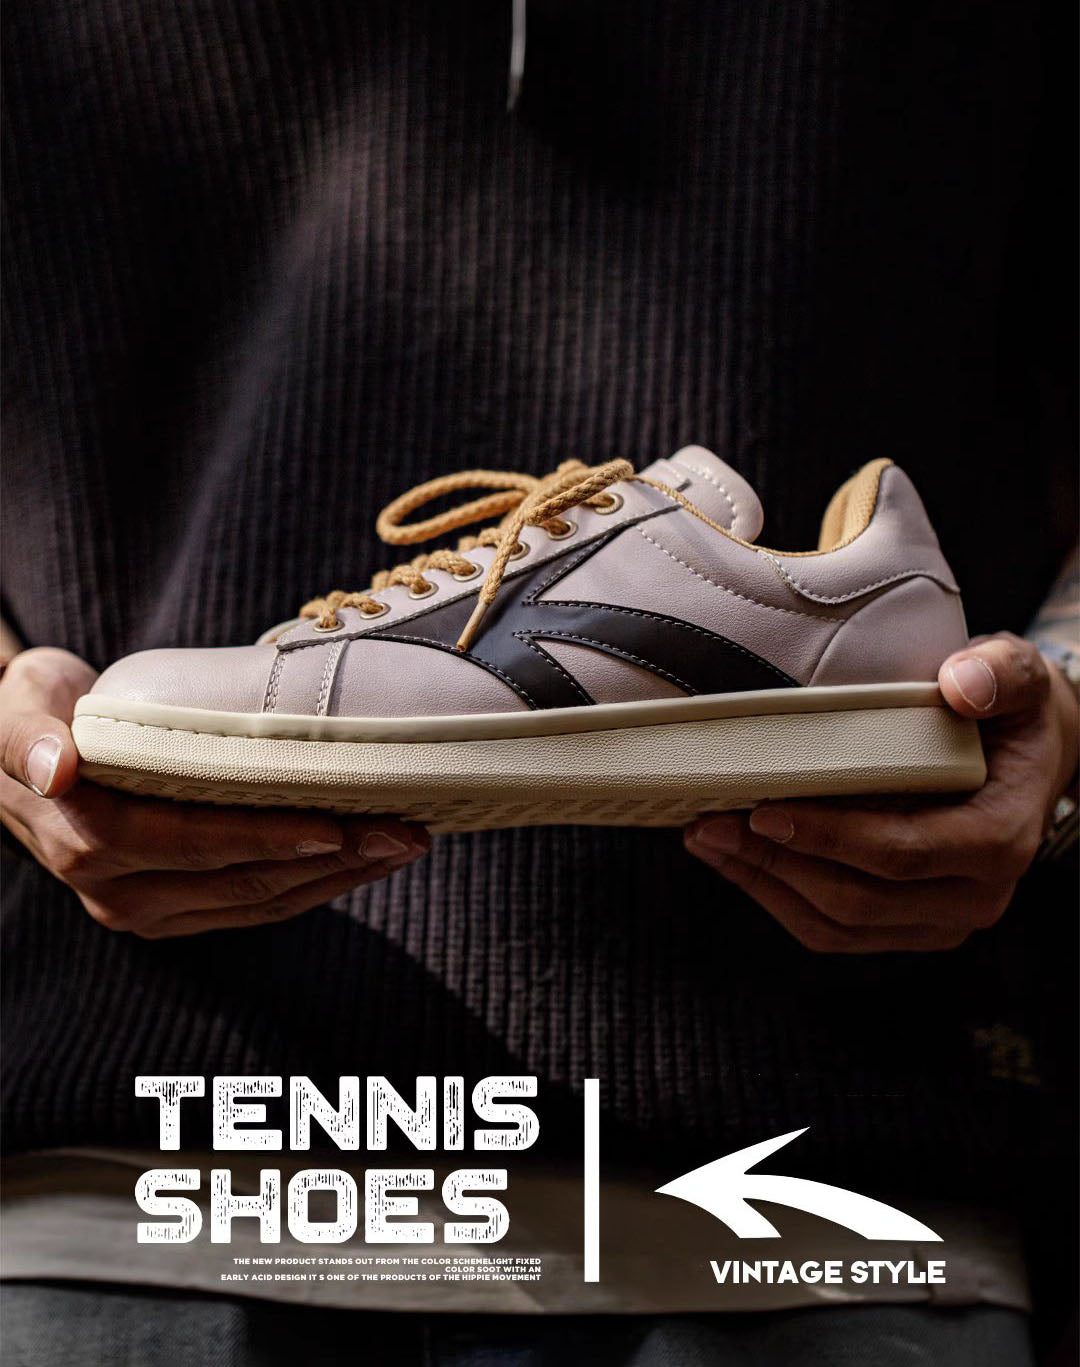 Retro Personalized Arrow Versatile Sports Men's Casual Shoes